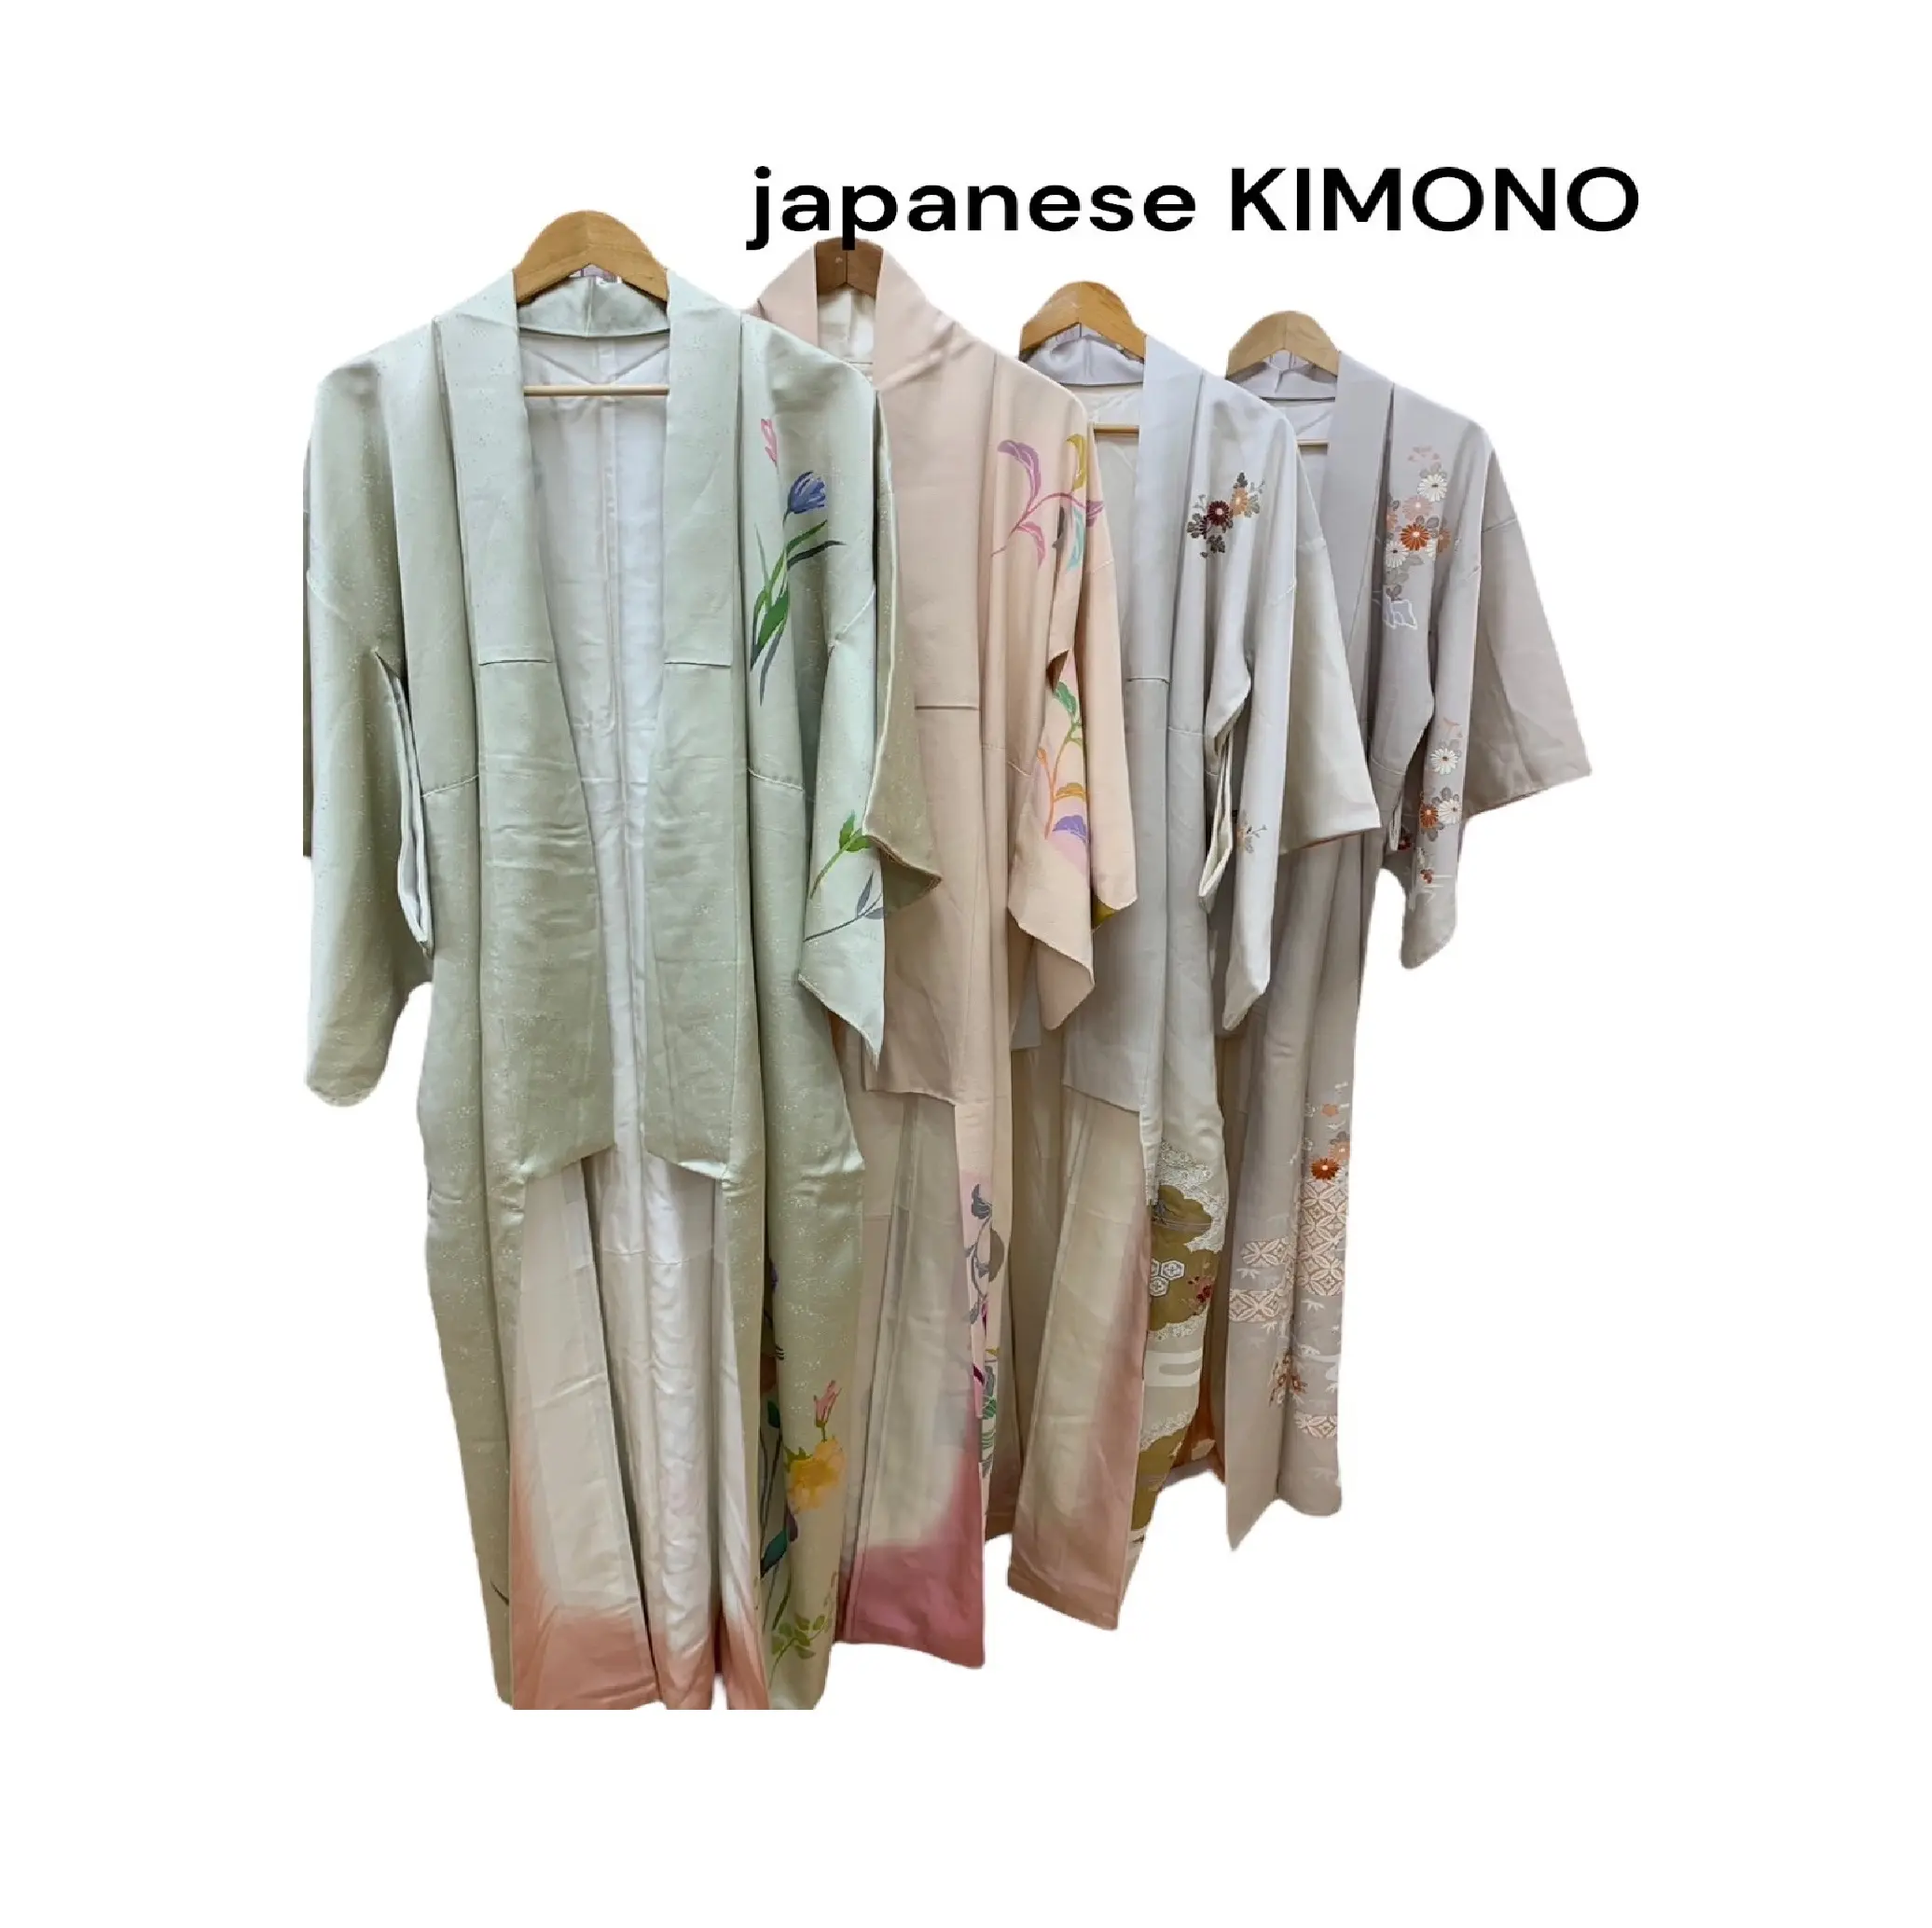 Eigenmarke Kimono langes Kleid Verkauf Japan gebrauchte Kleidung Markenoriginal